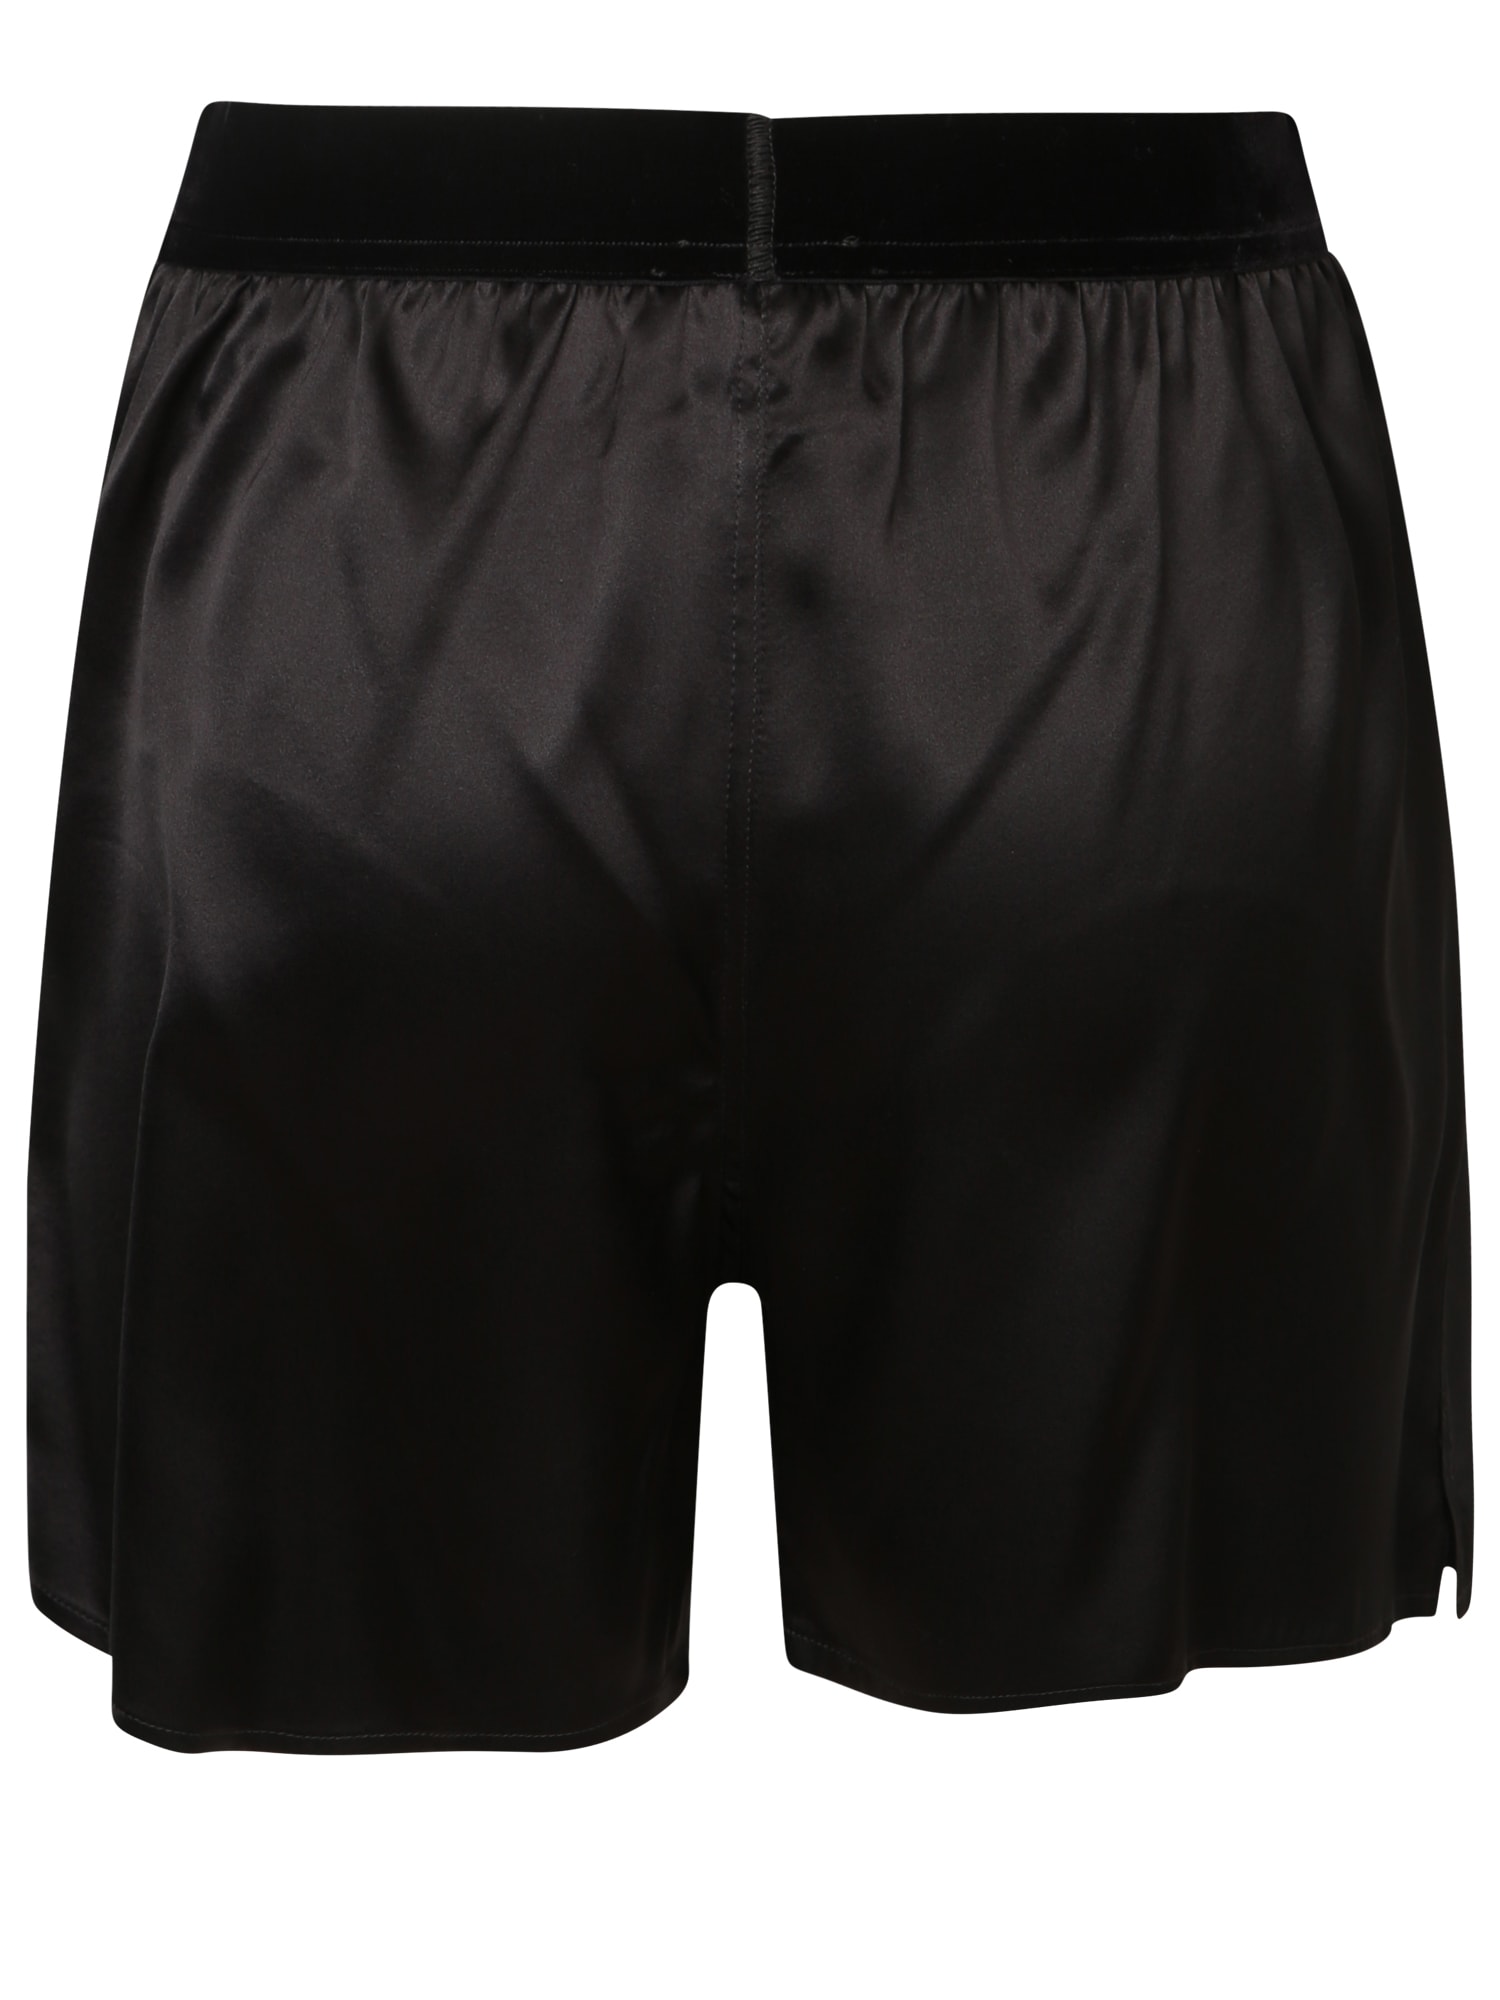 Shop Tom Ford Black Silk Satin Pj Shorts